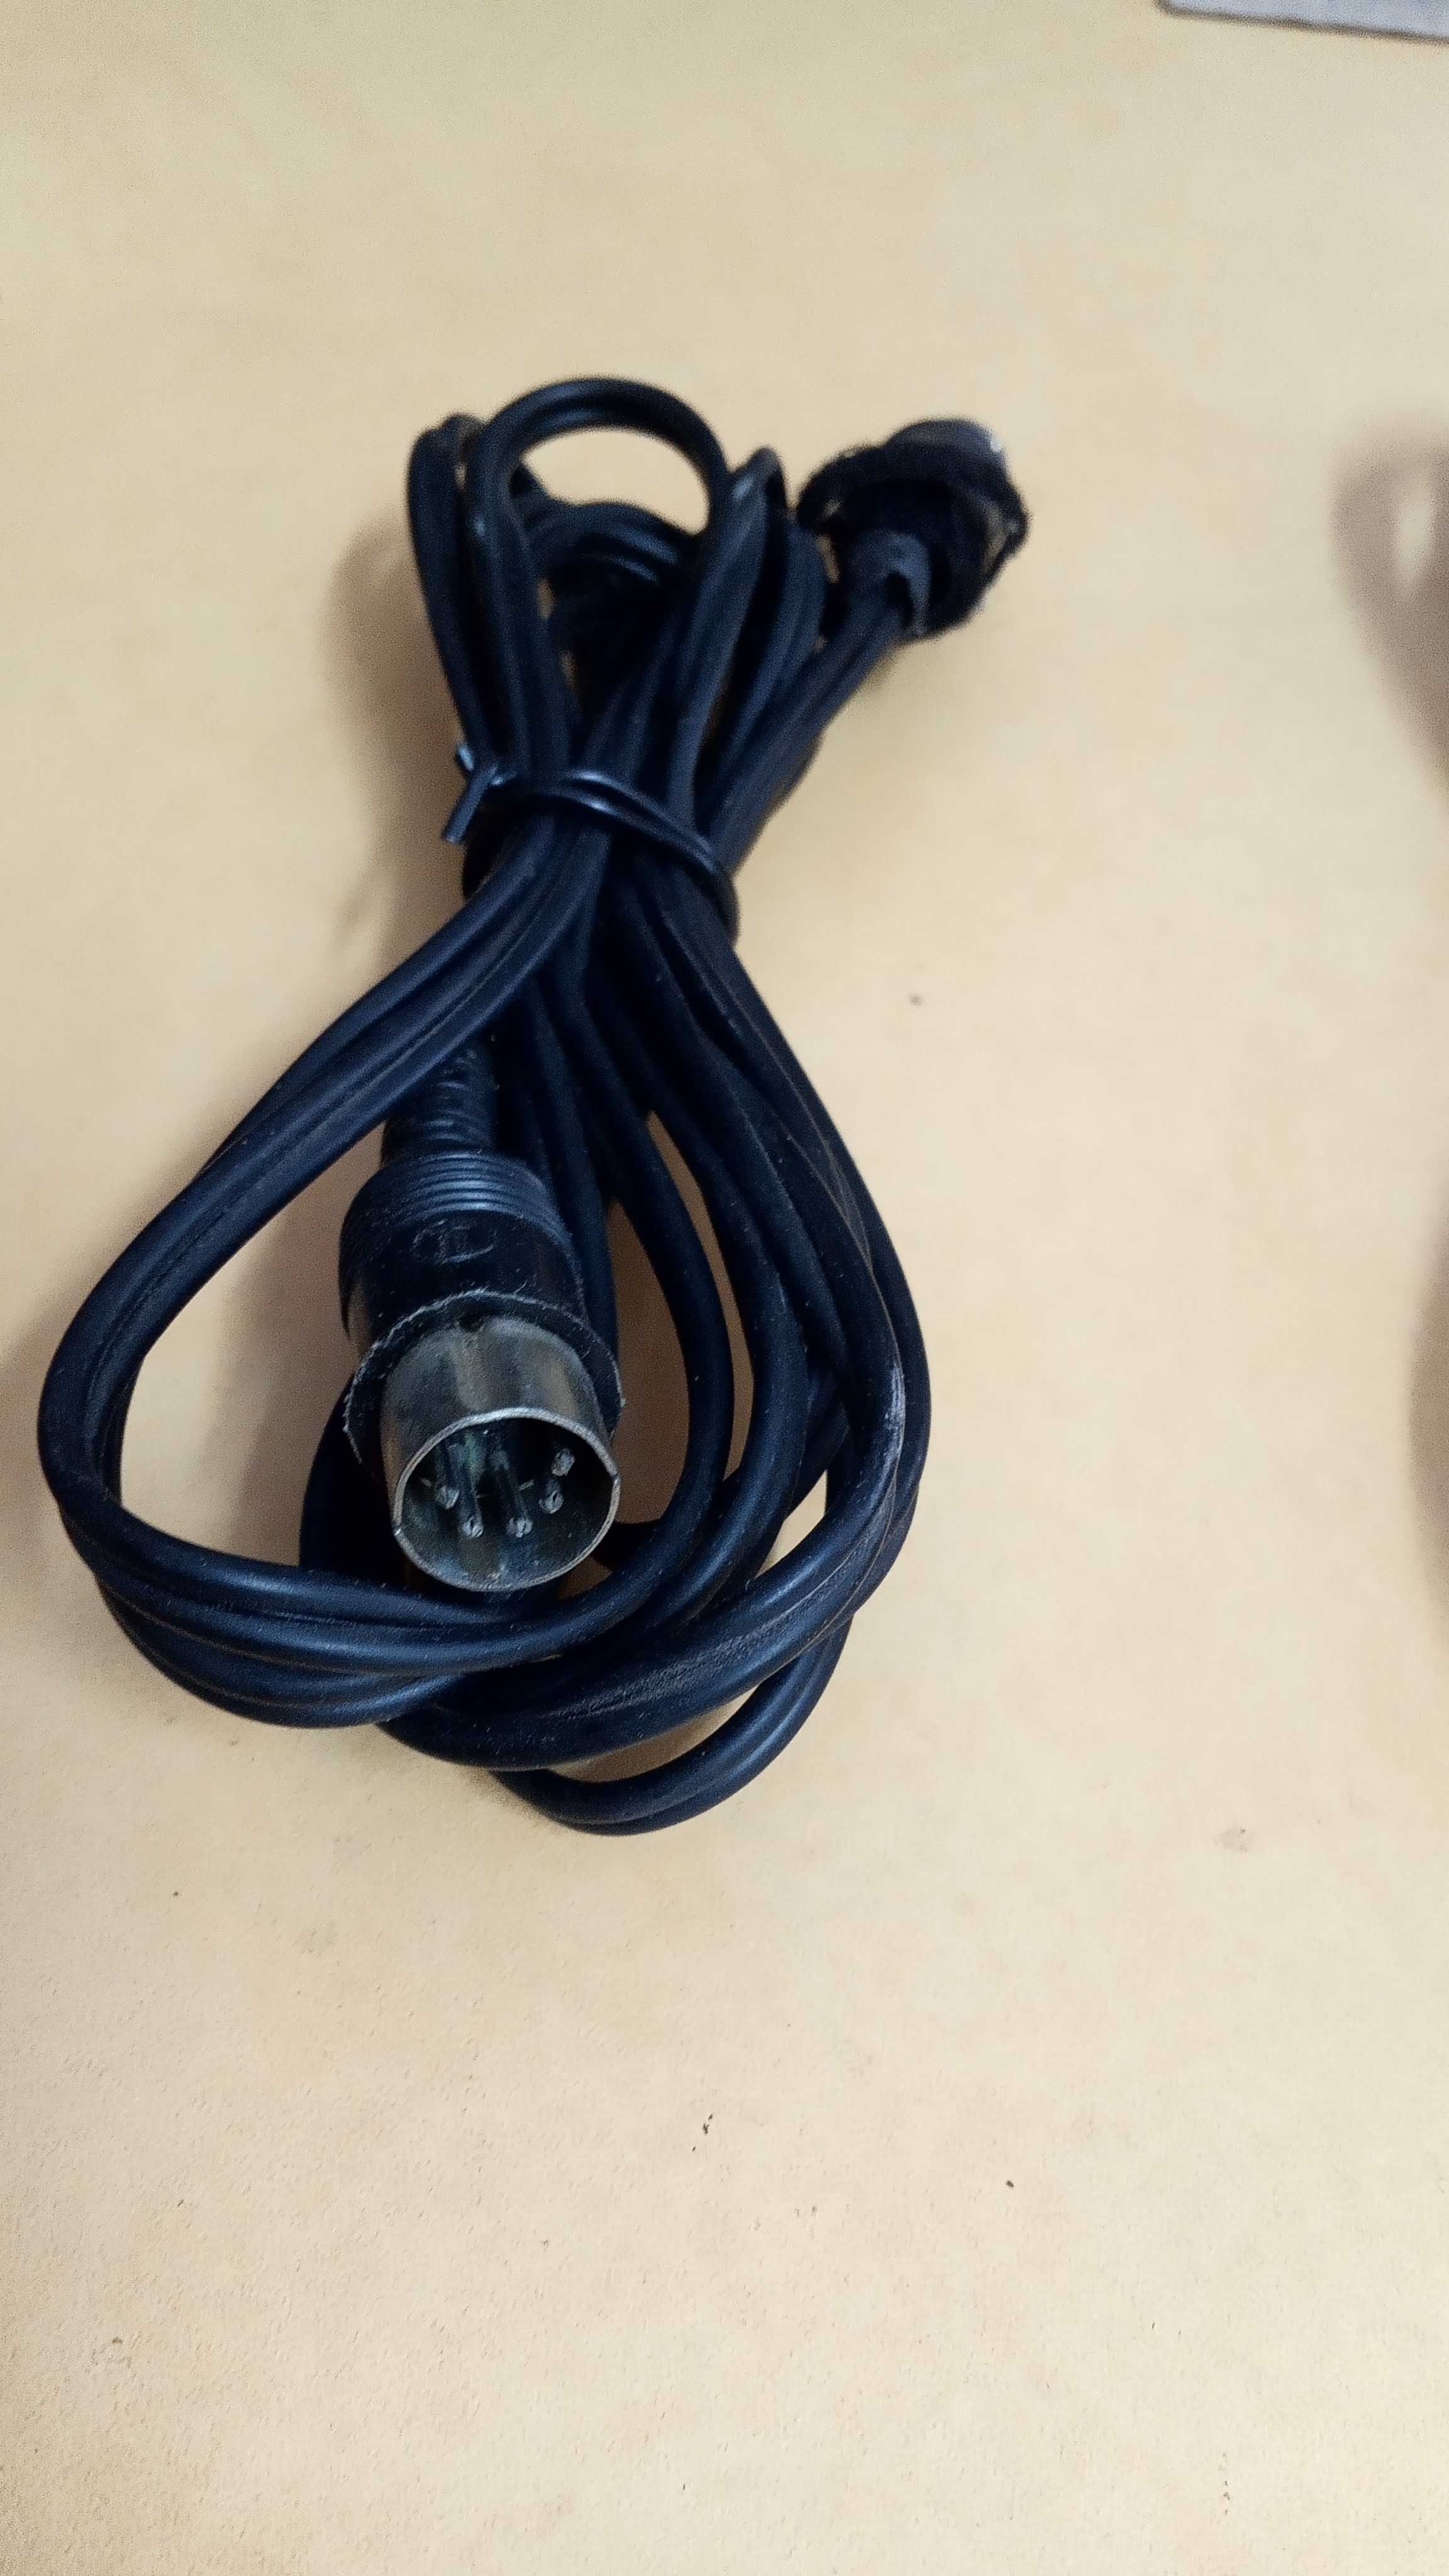 Переходники, кабеля для подключения ПК, аудио, видео техники